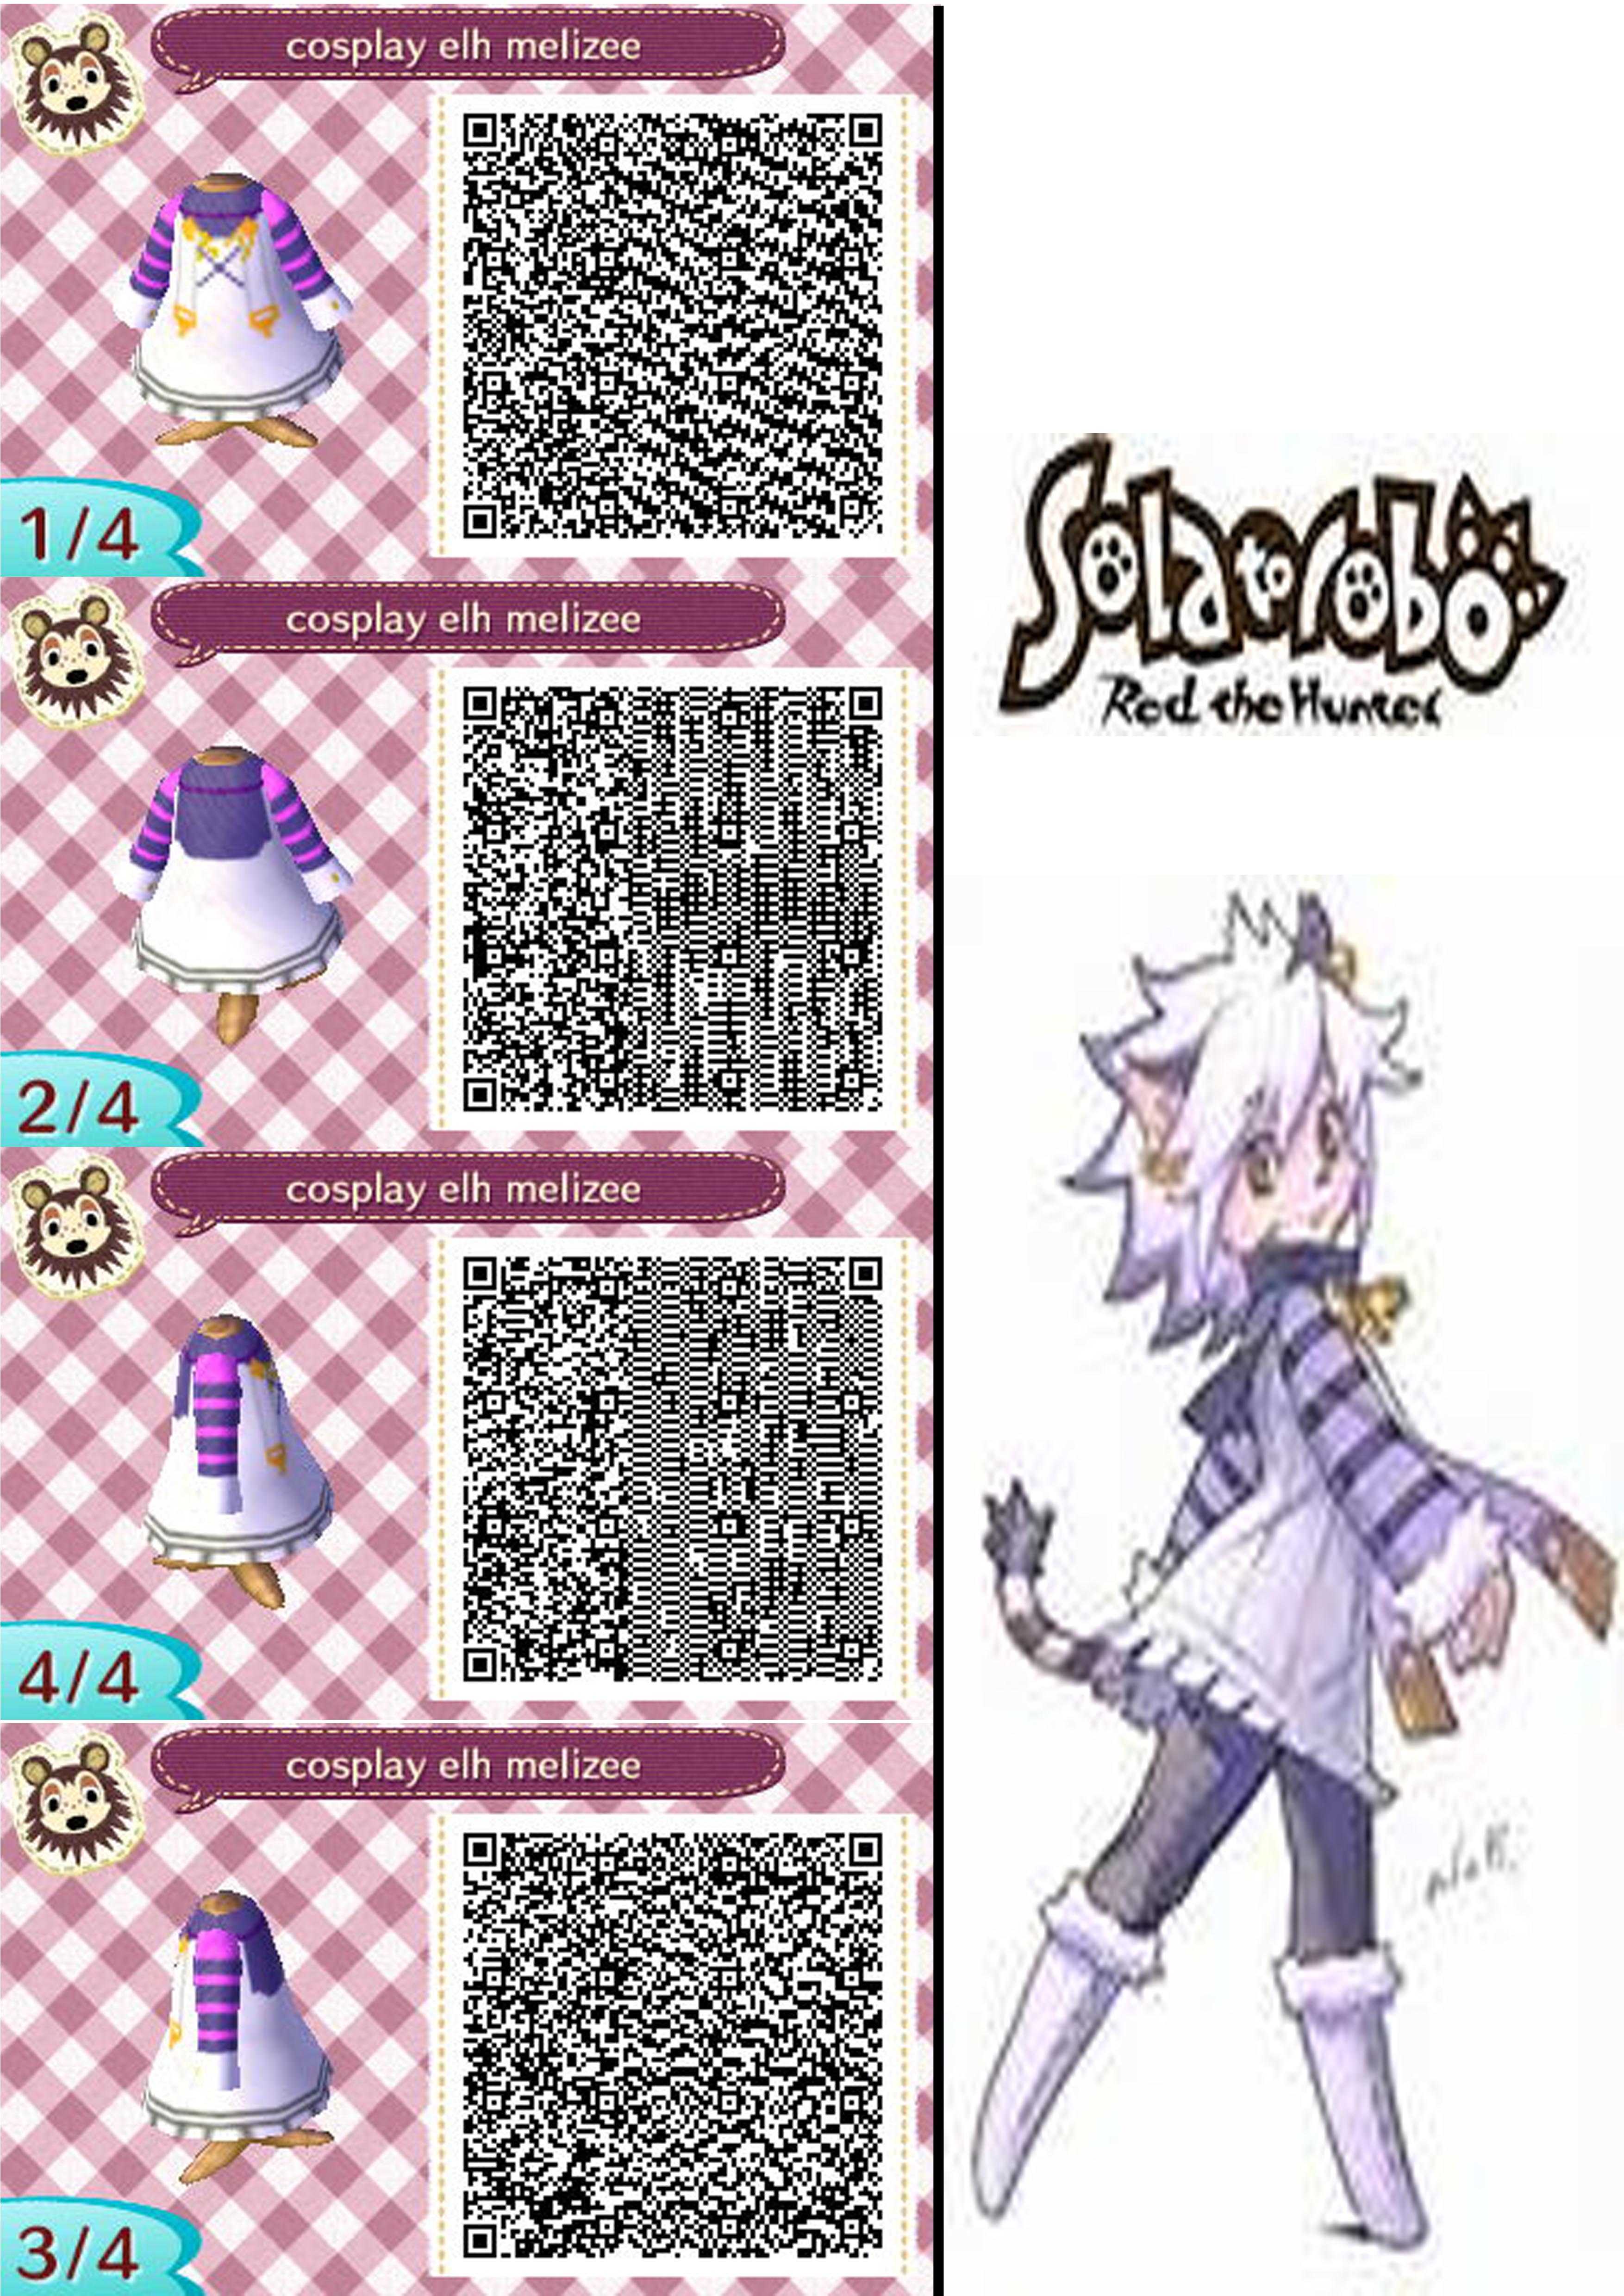 [48+] Animal Crossing Wallpaper QR Codes | WallpaperSafari.com